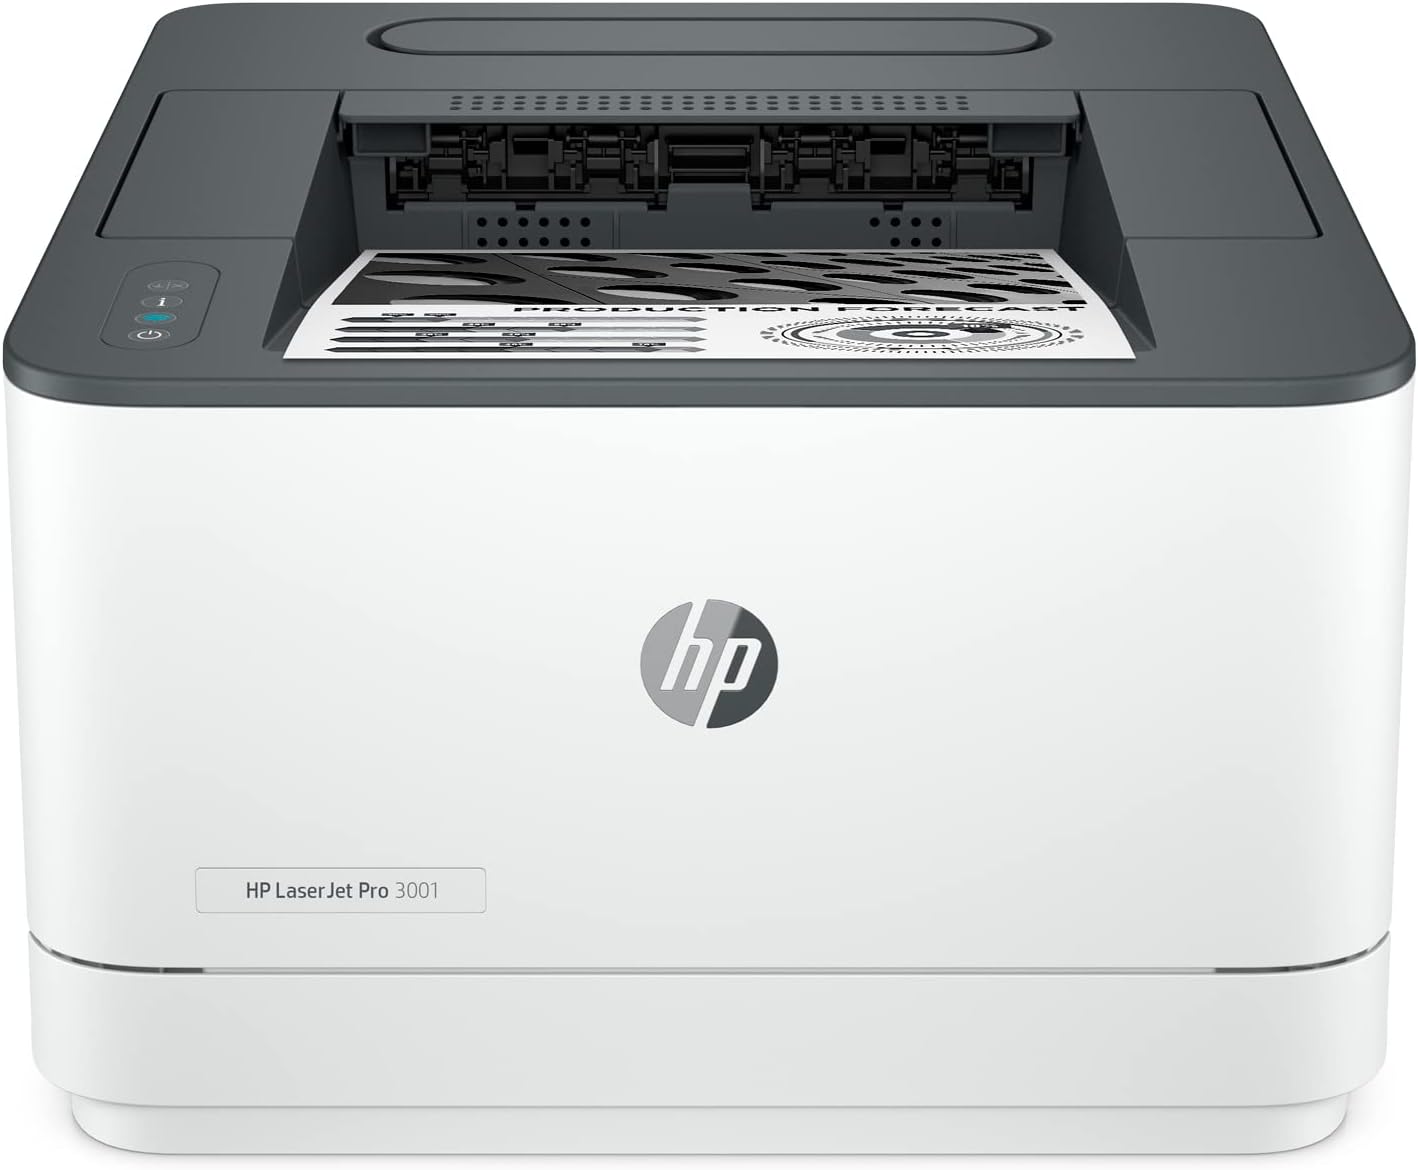 HP LaserJet Pro 3001DW